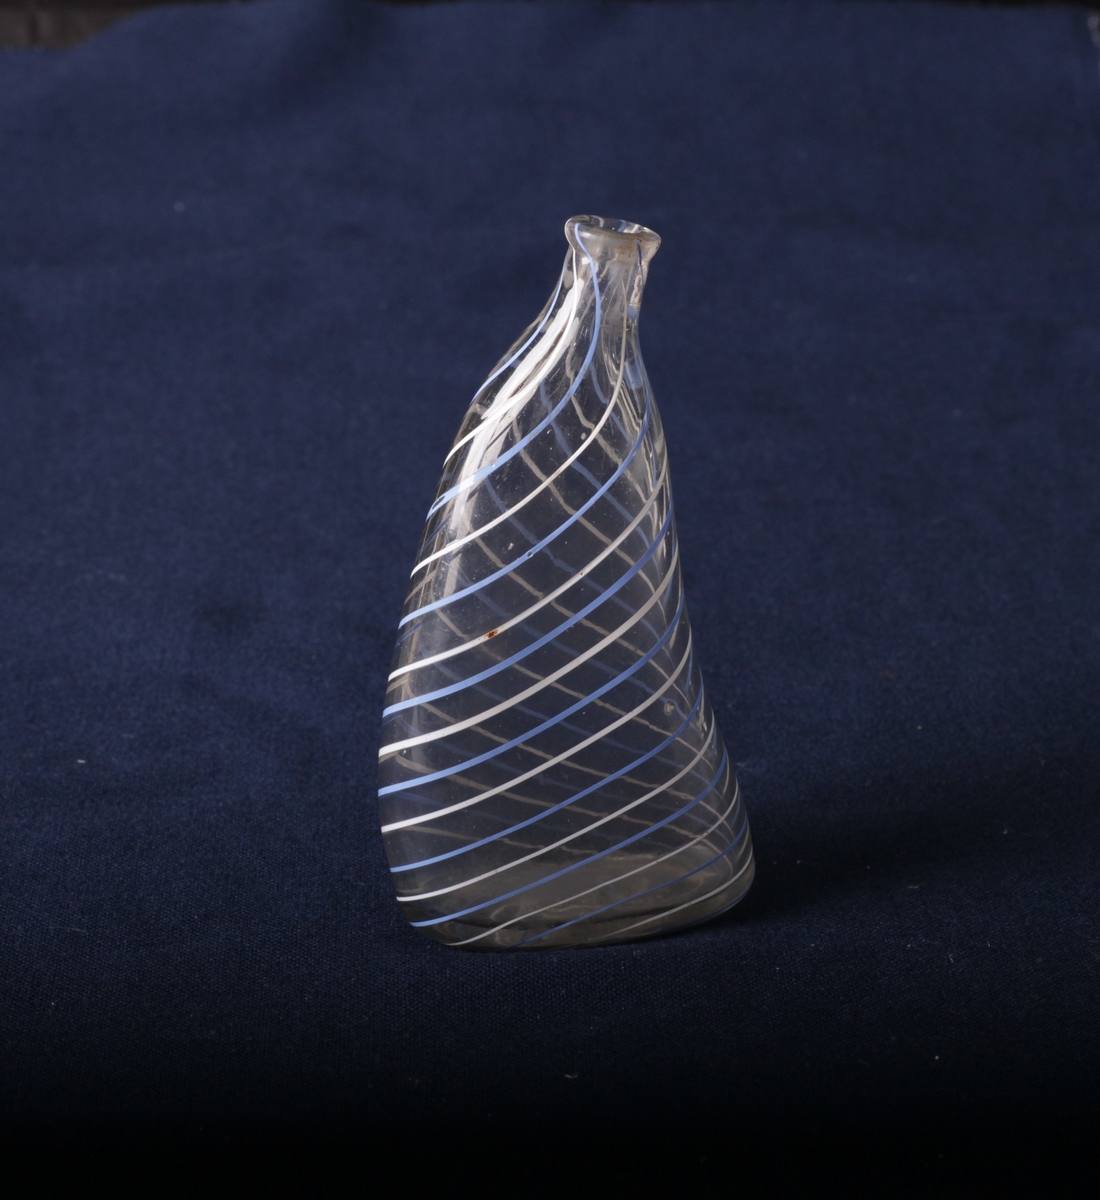 Flaske med blå og hvite striper som danner et spiralmønster.